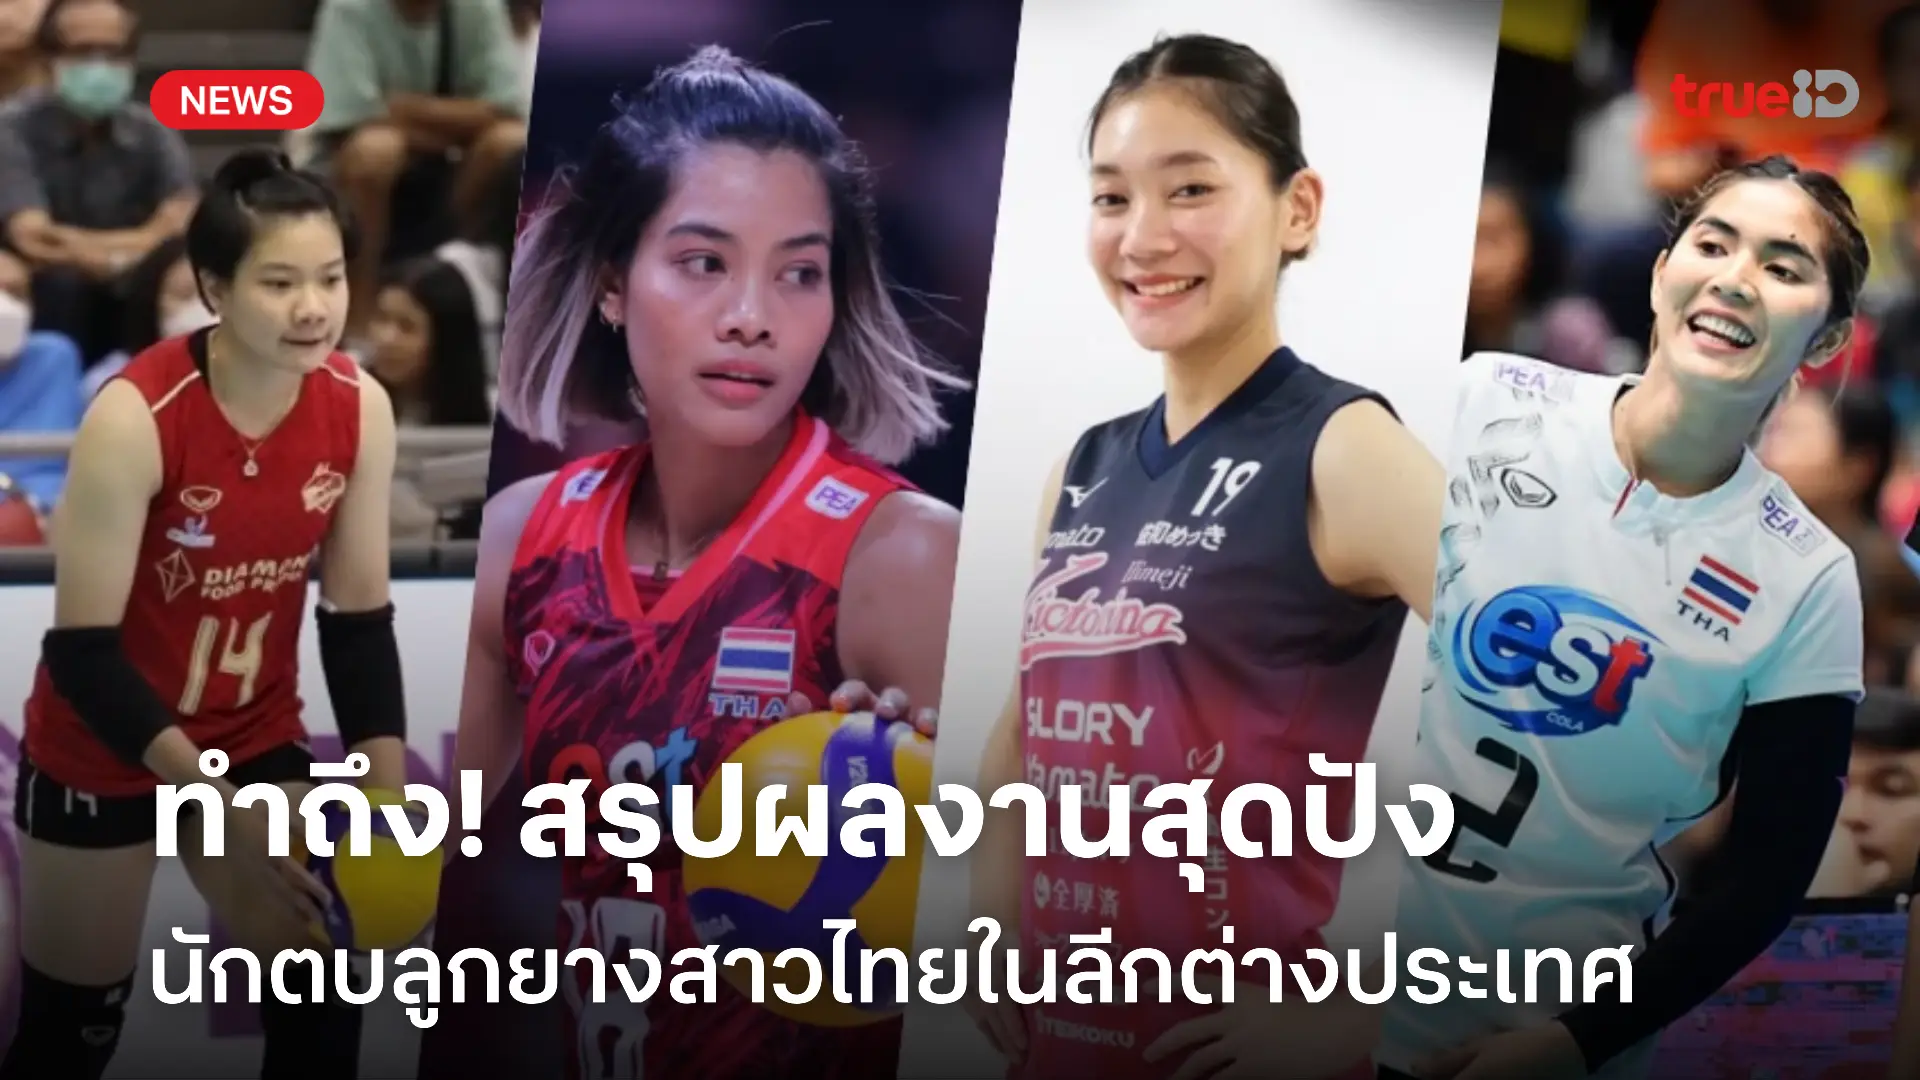 ทำถึง! สรุปผลงานนักวอลเลย์บอลสาวไทย ในลีกต่างประเทศ